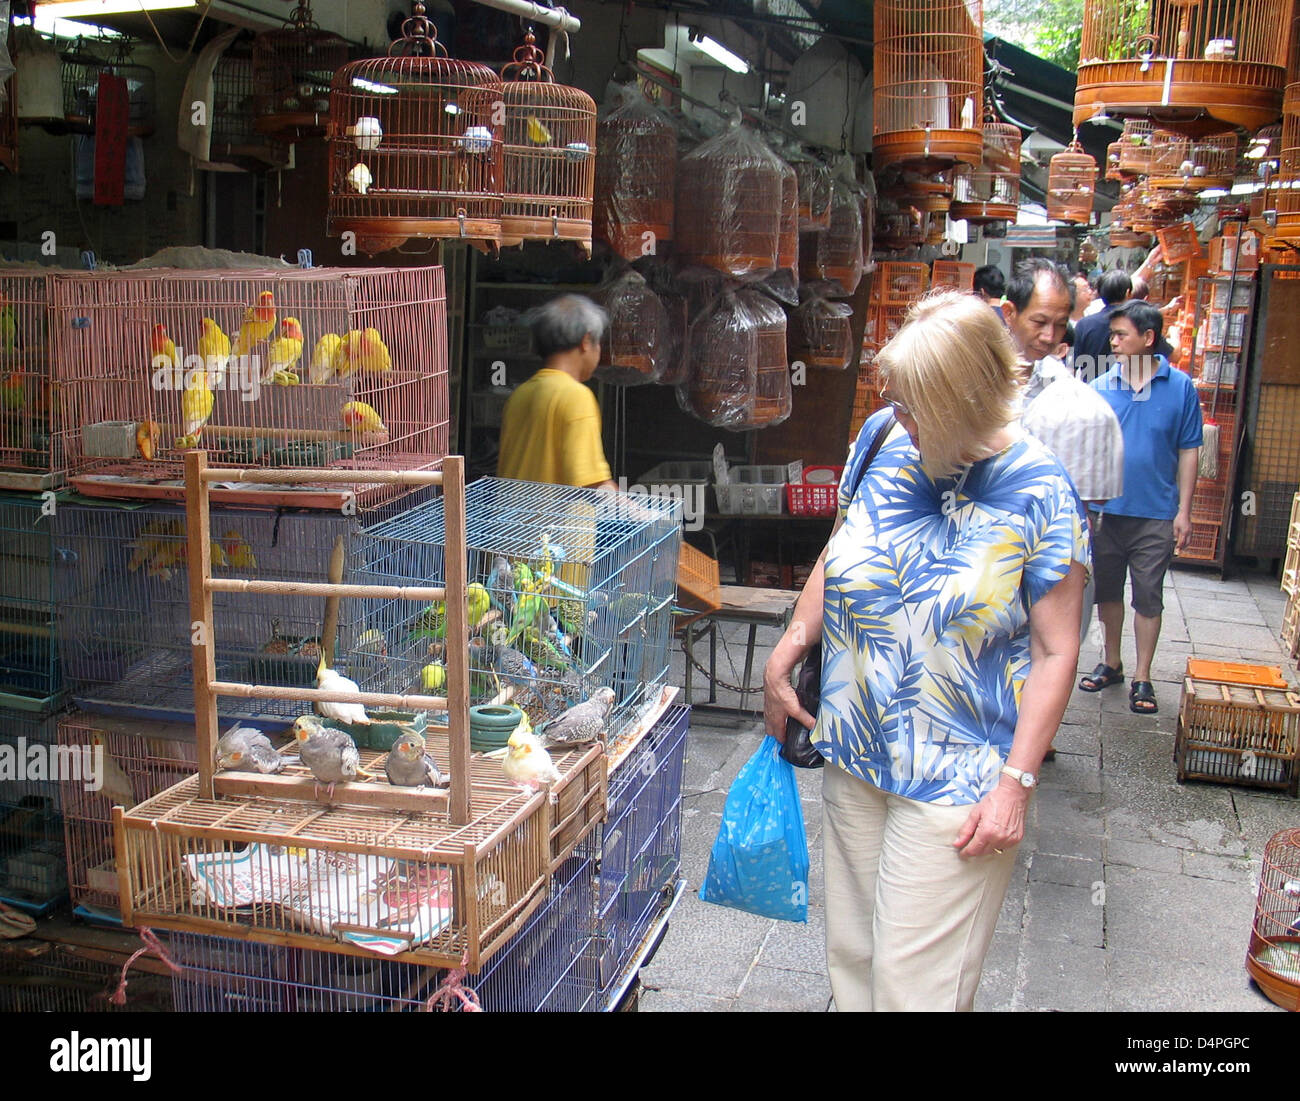 (Datei) - die Datei Bild vom 25. Oktober 2008 zeigt Sittiche engstem in Käfigen auf den Vogelmarkt im Stadtteil Kowloon in Hong Kong, China. Der Markt ist sehr beliebt und ein Treffpunkt für Vogelliebhaber. Foto: Frank-Baumgart Stockfoto